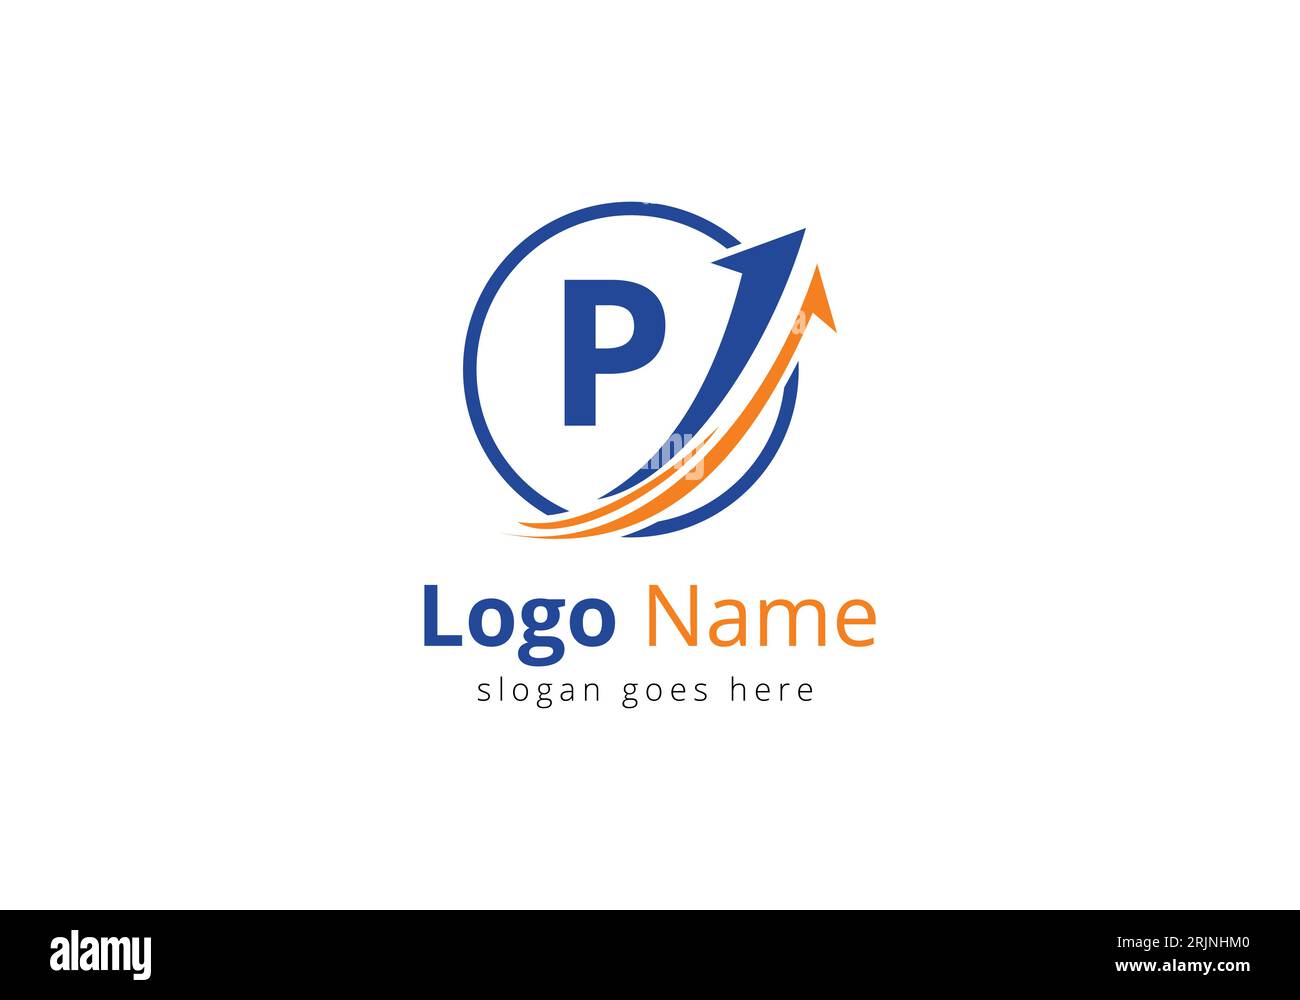 Logo Finance avec lettre P. Concept de logo financier ou de réussite. Logo pour l'entreprise comptable et l'identité de l'entreprise Illustration de Vecteur